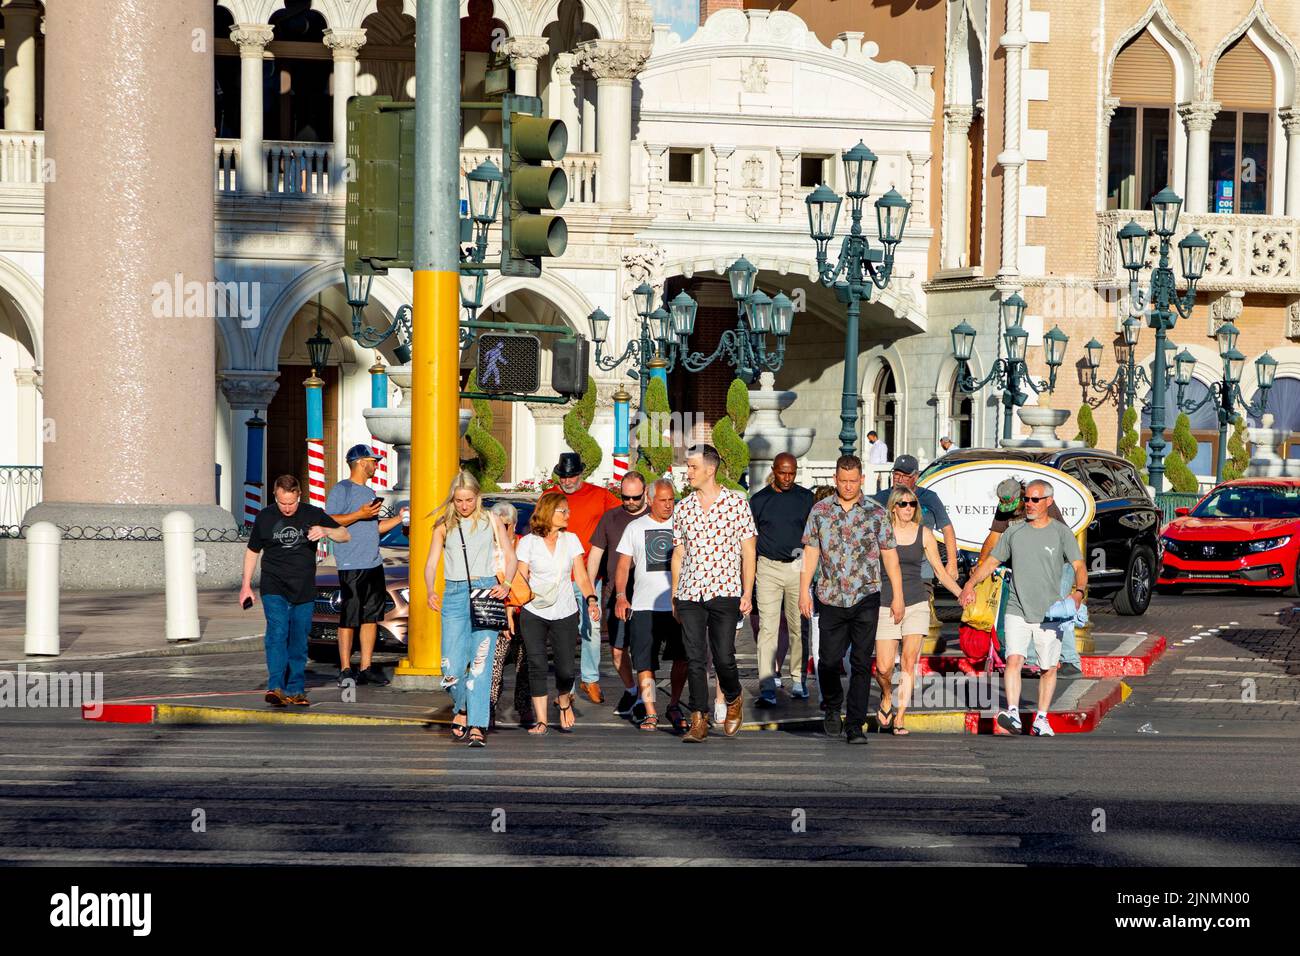 Las Vegas, EE.UU. - 24 de mayo de 2022: La gente en el cruce de peatones espera la luz verde. En el fondo Hotel The Venetian en el Strip durante el día. Foto de stock